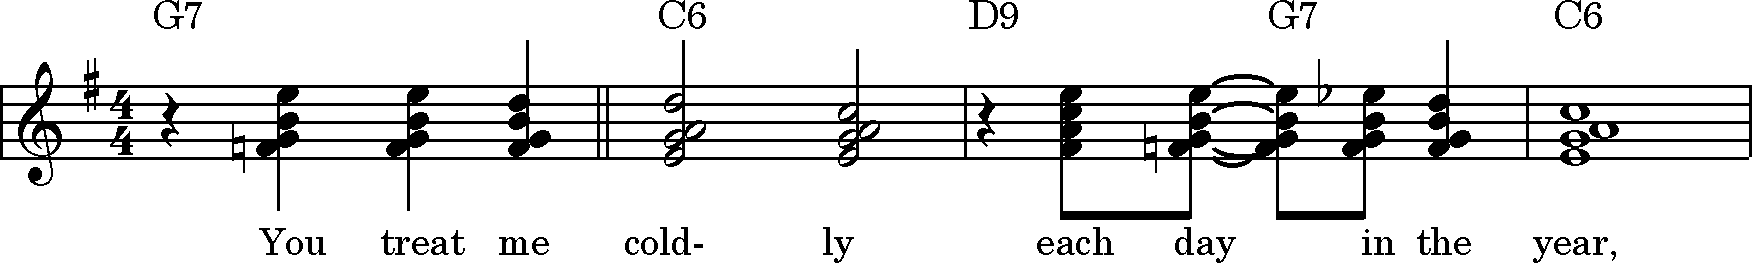 Blokharmonisering med fills Jazzarrangement s. 10 Her er en mægtig god brug af forskellige sektioner i jazz-orkesteret.